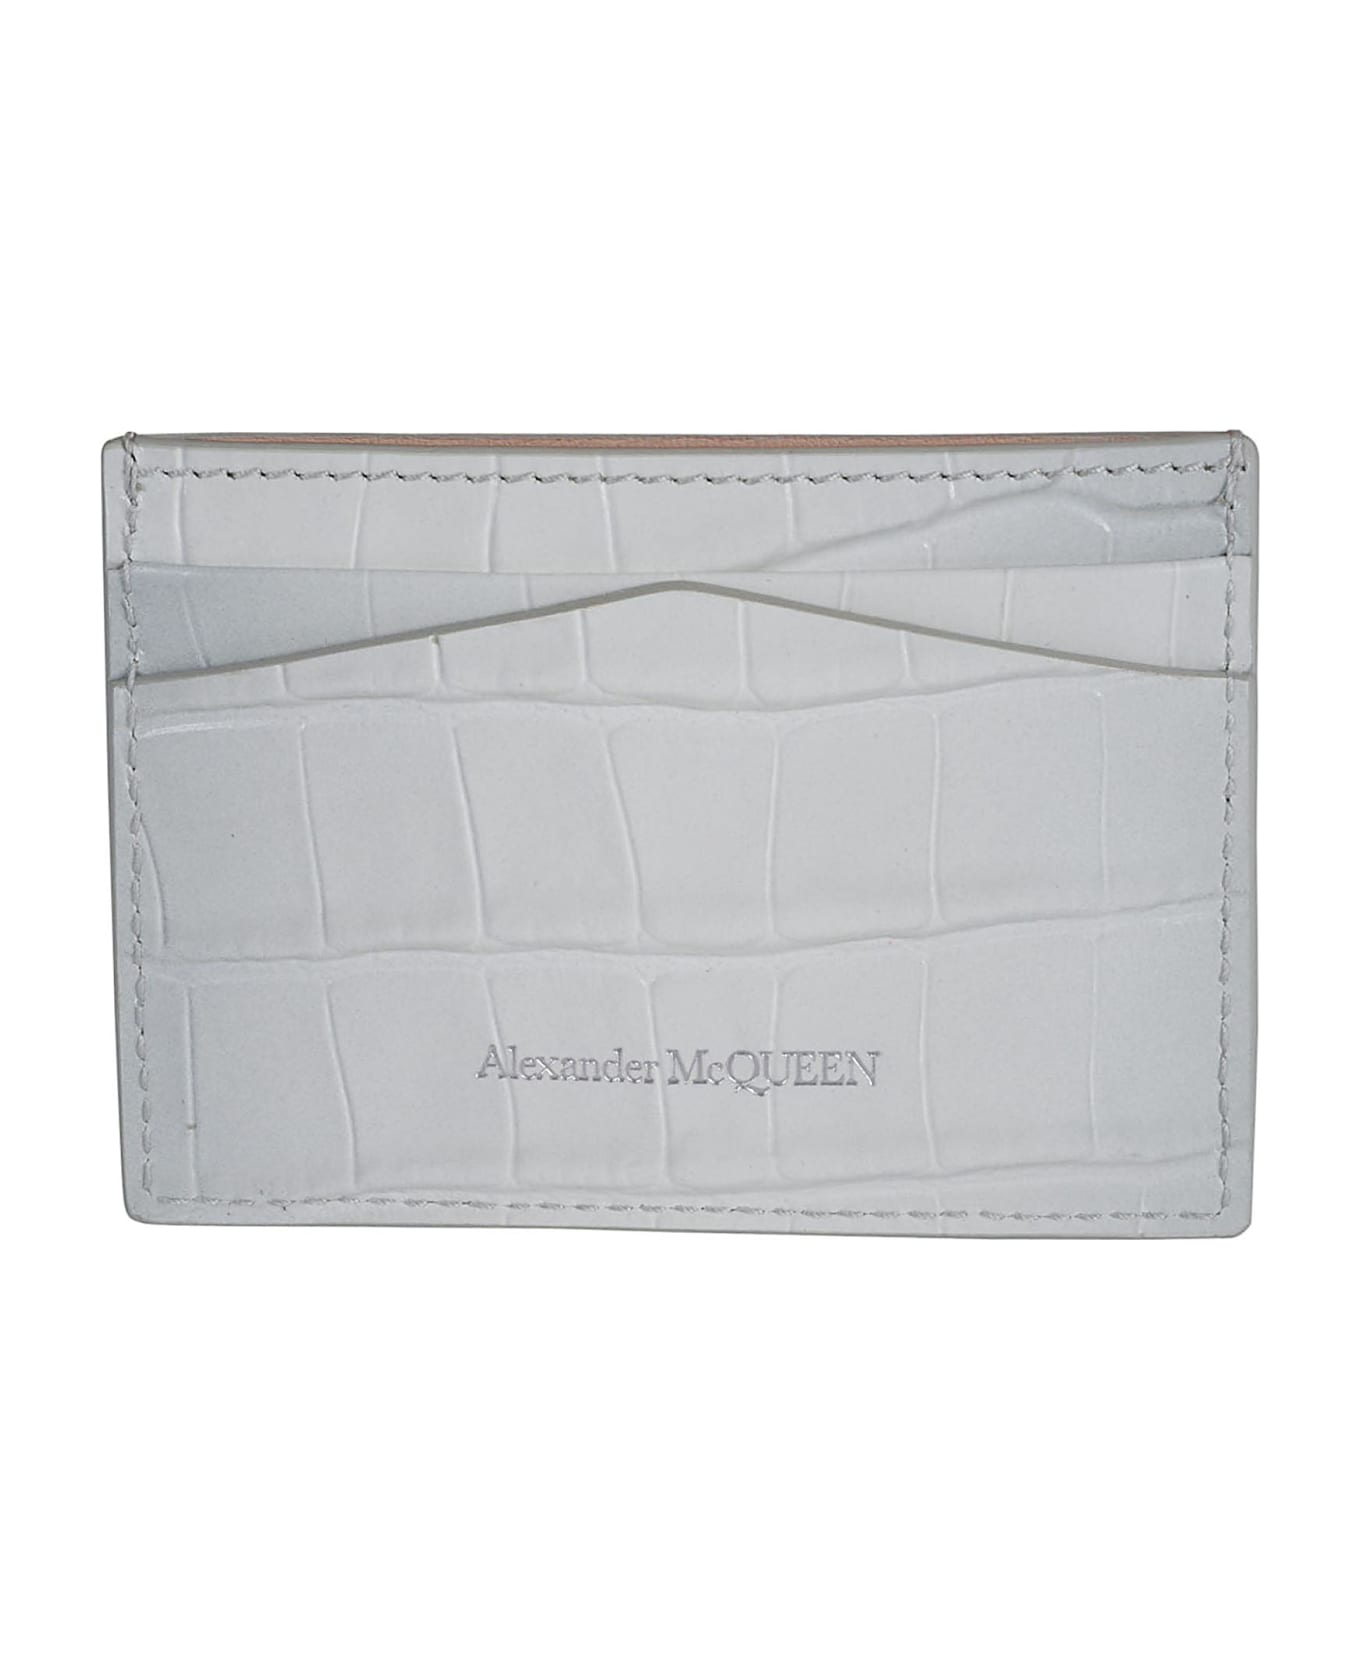 Alexander McQueen Skull Card Holder - Ivory/Grey